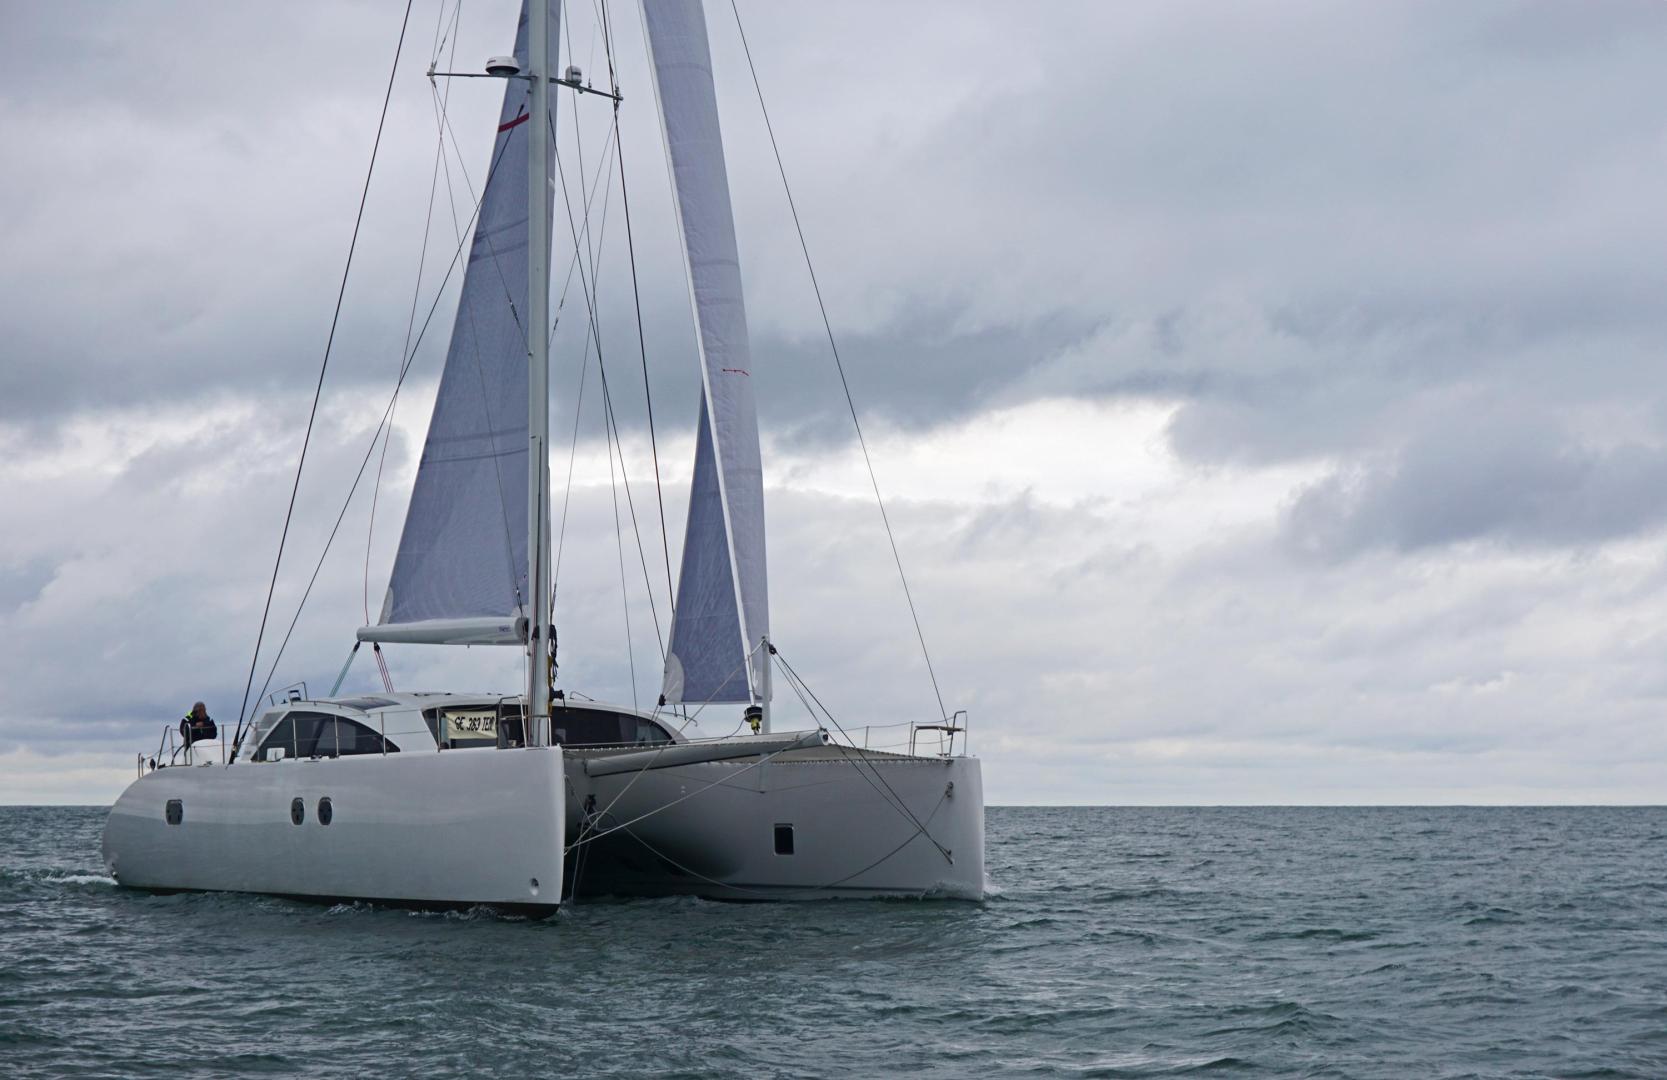 Icecat 61, pronto il lancio del nuovissimo modello Ice Yachts